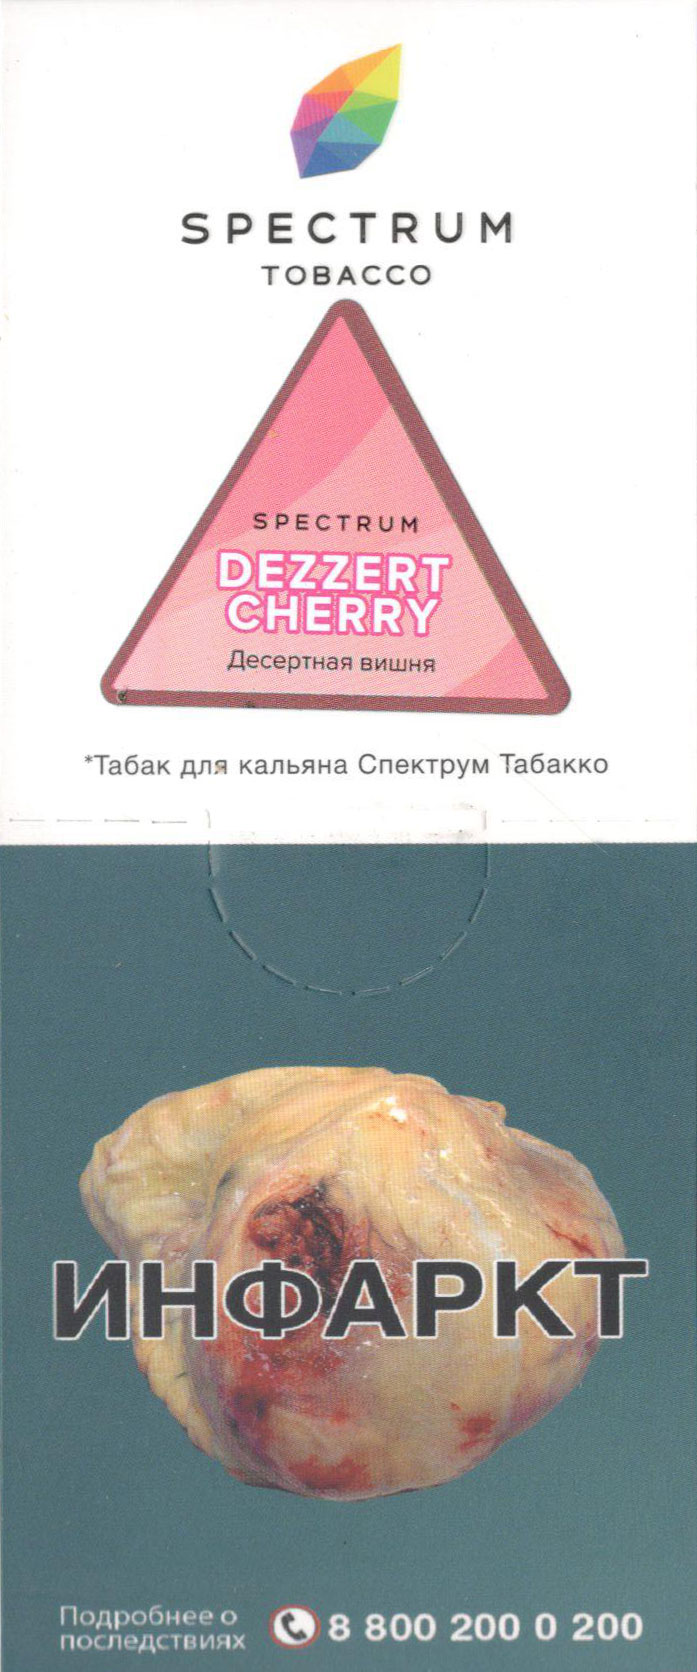 Spectrum- Десертная вишня (Dezzert Cherry) фото